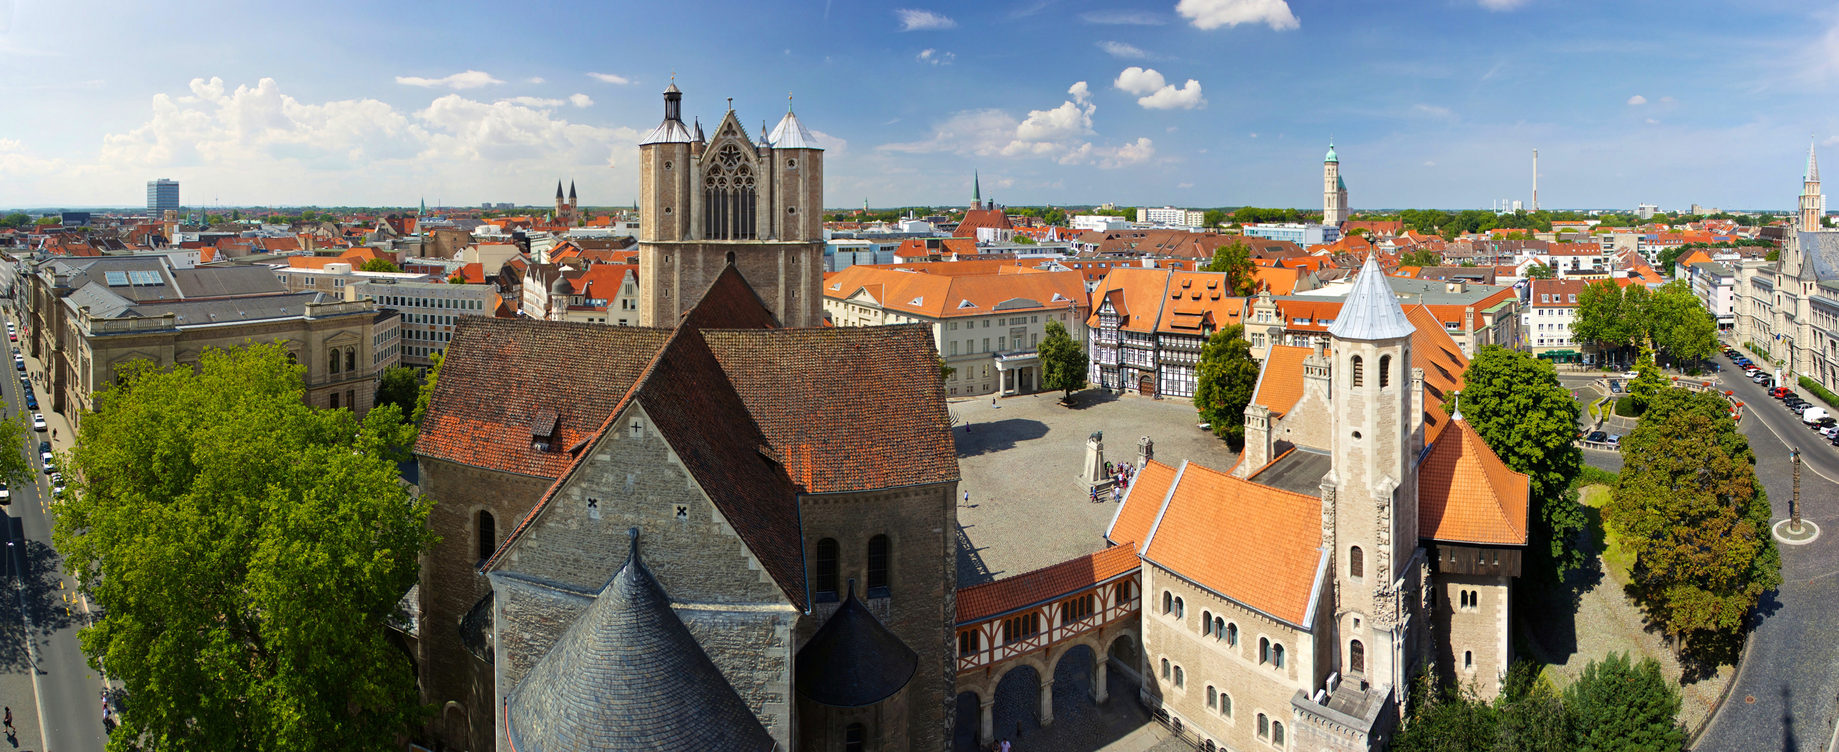 Blick vom Rathausturm auf den Burgplatz